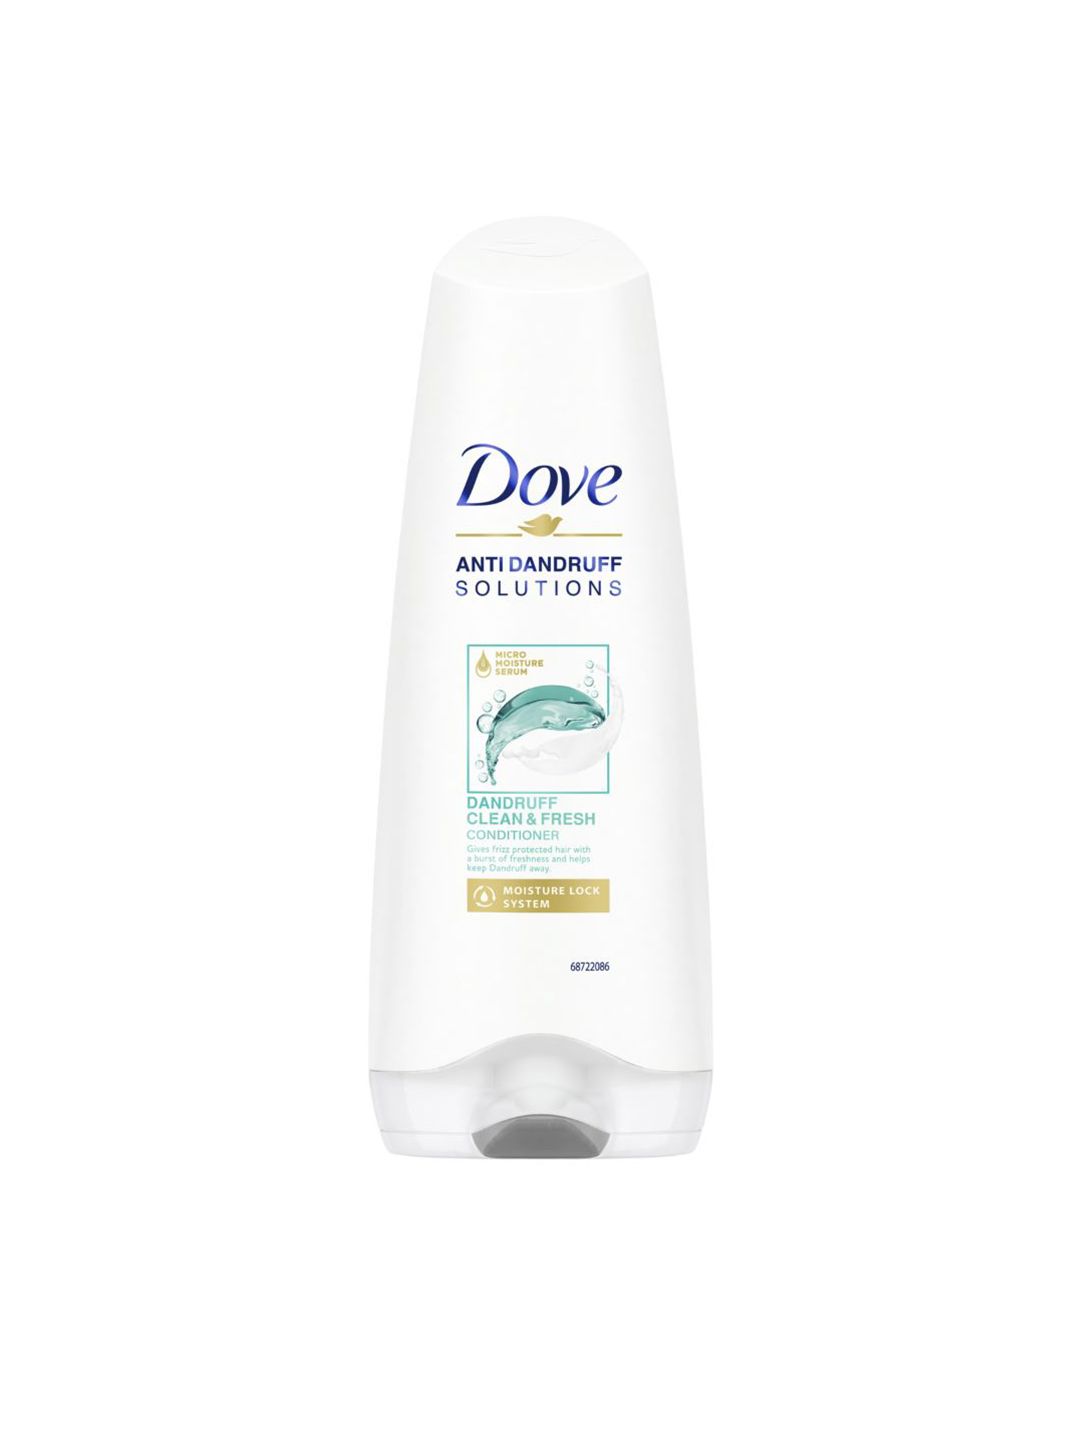 Dove Dandruff Clean & Fresh Conditioner 180 ml Price in India